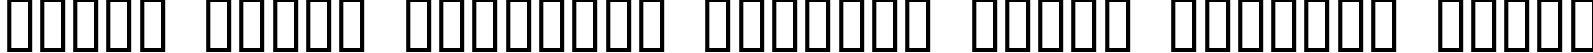 Пример написания шрифтом JI Kaleidoscope Bats 3 текста на белорусском